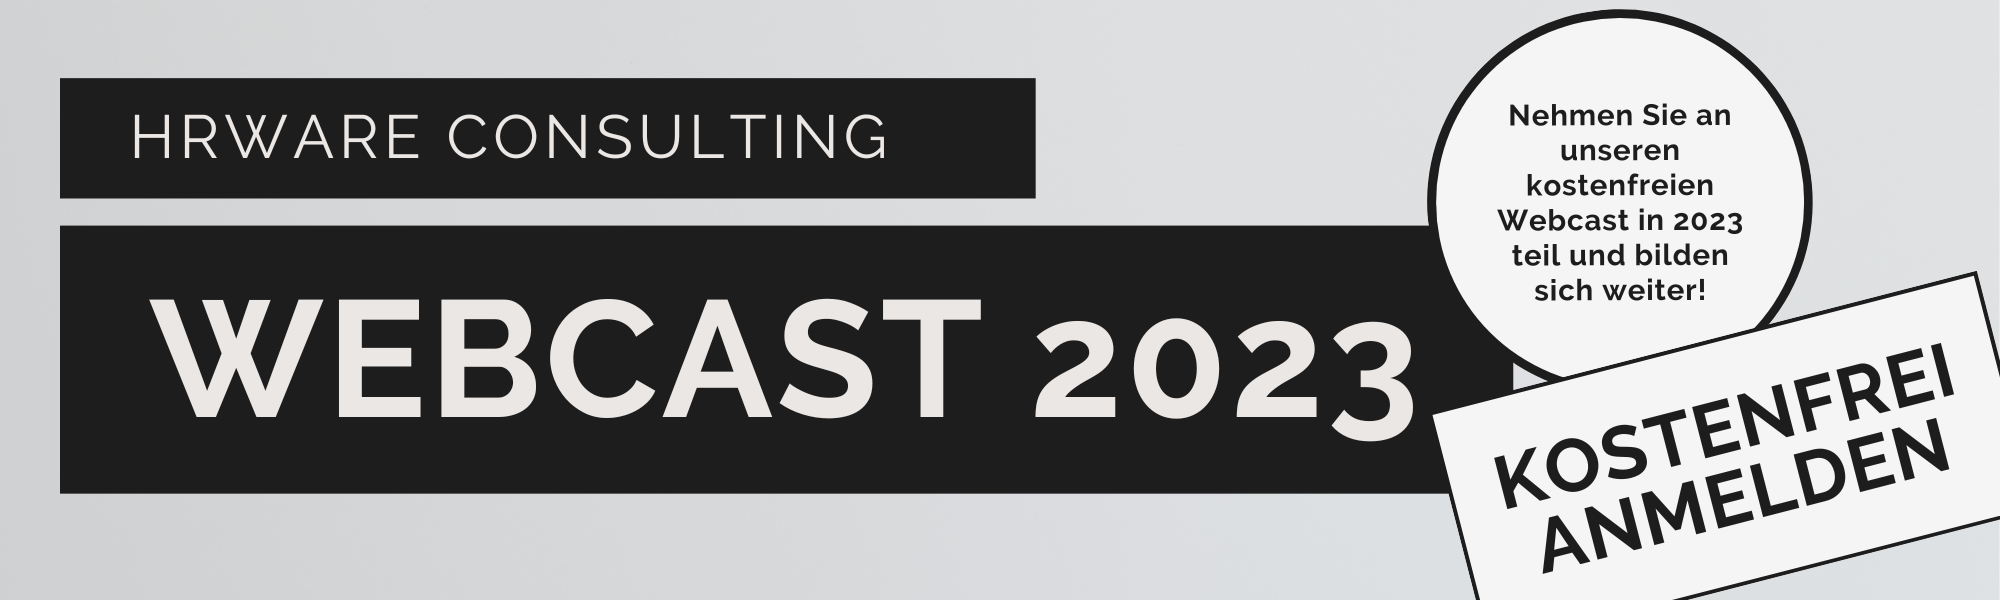 kostenfreier Webcasts 2023